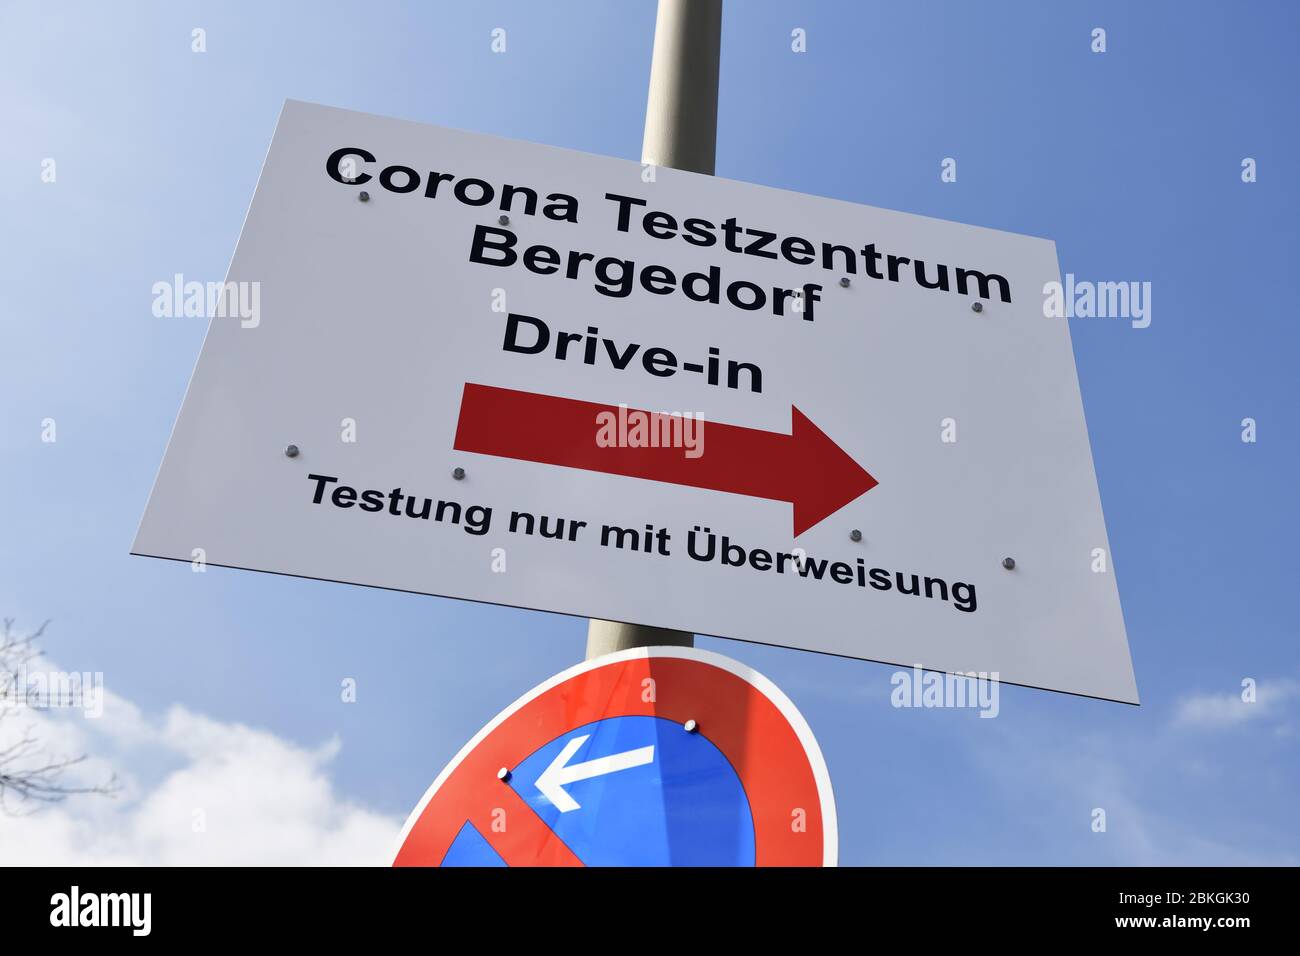 Guide du Corona Test Centre Bergedorf à Hambourg, Allemagne, Europe / Wegweiser zum Corona Testzentrum Bergedorf à Hambourg, Allemagne, Allemagne, Europa Banque D'Images